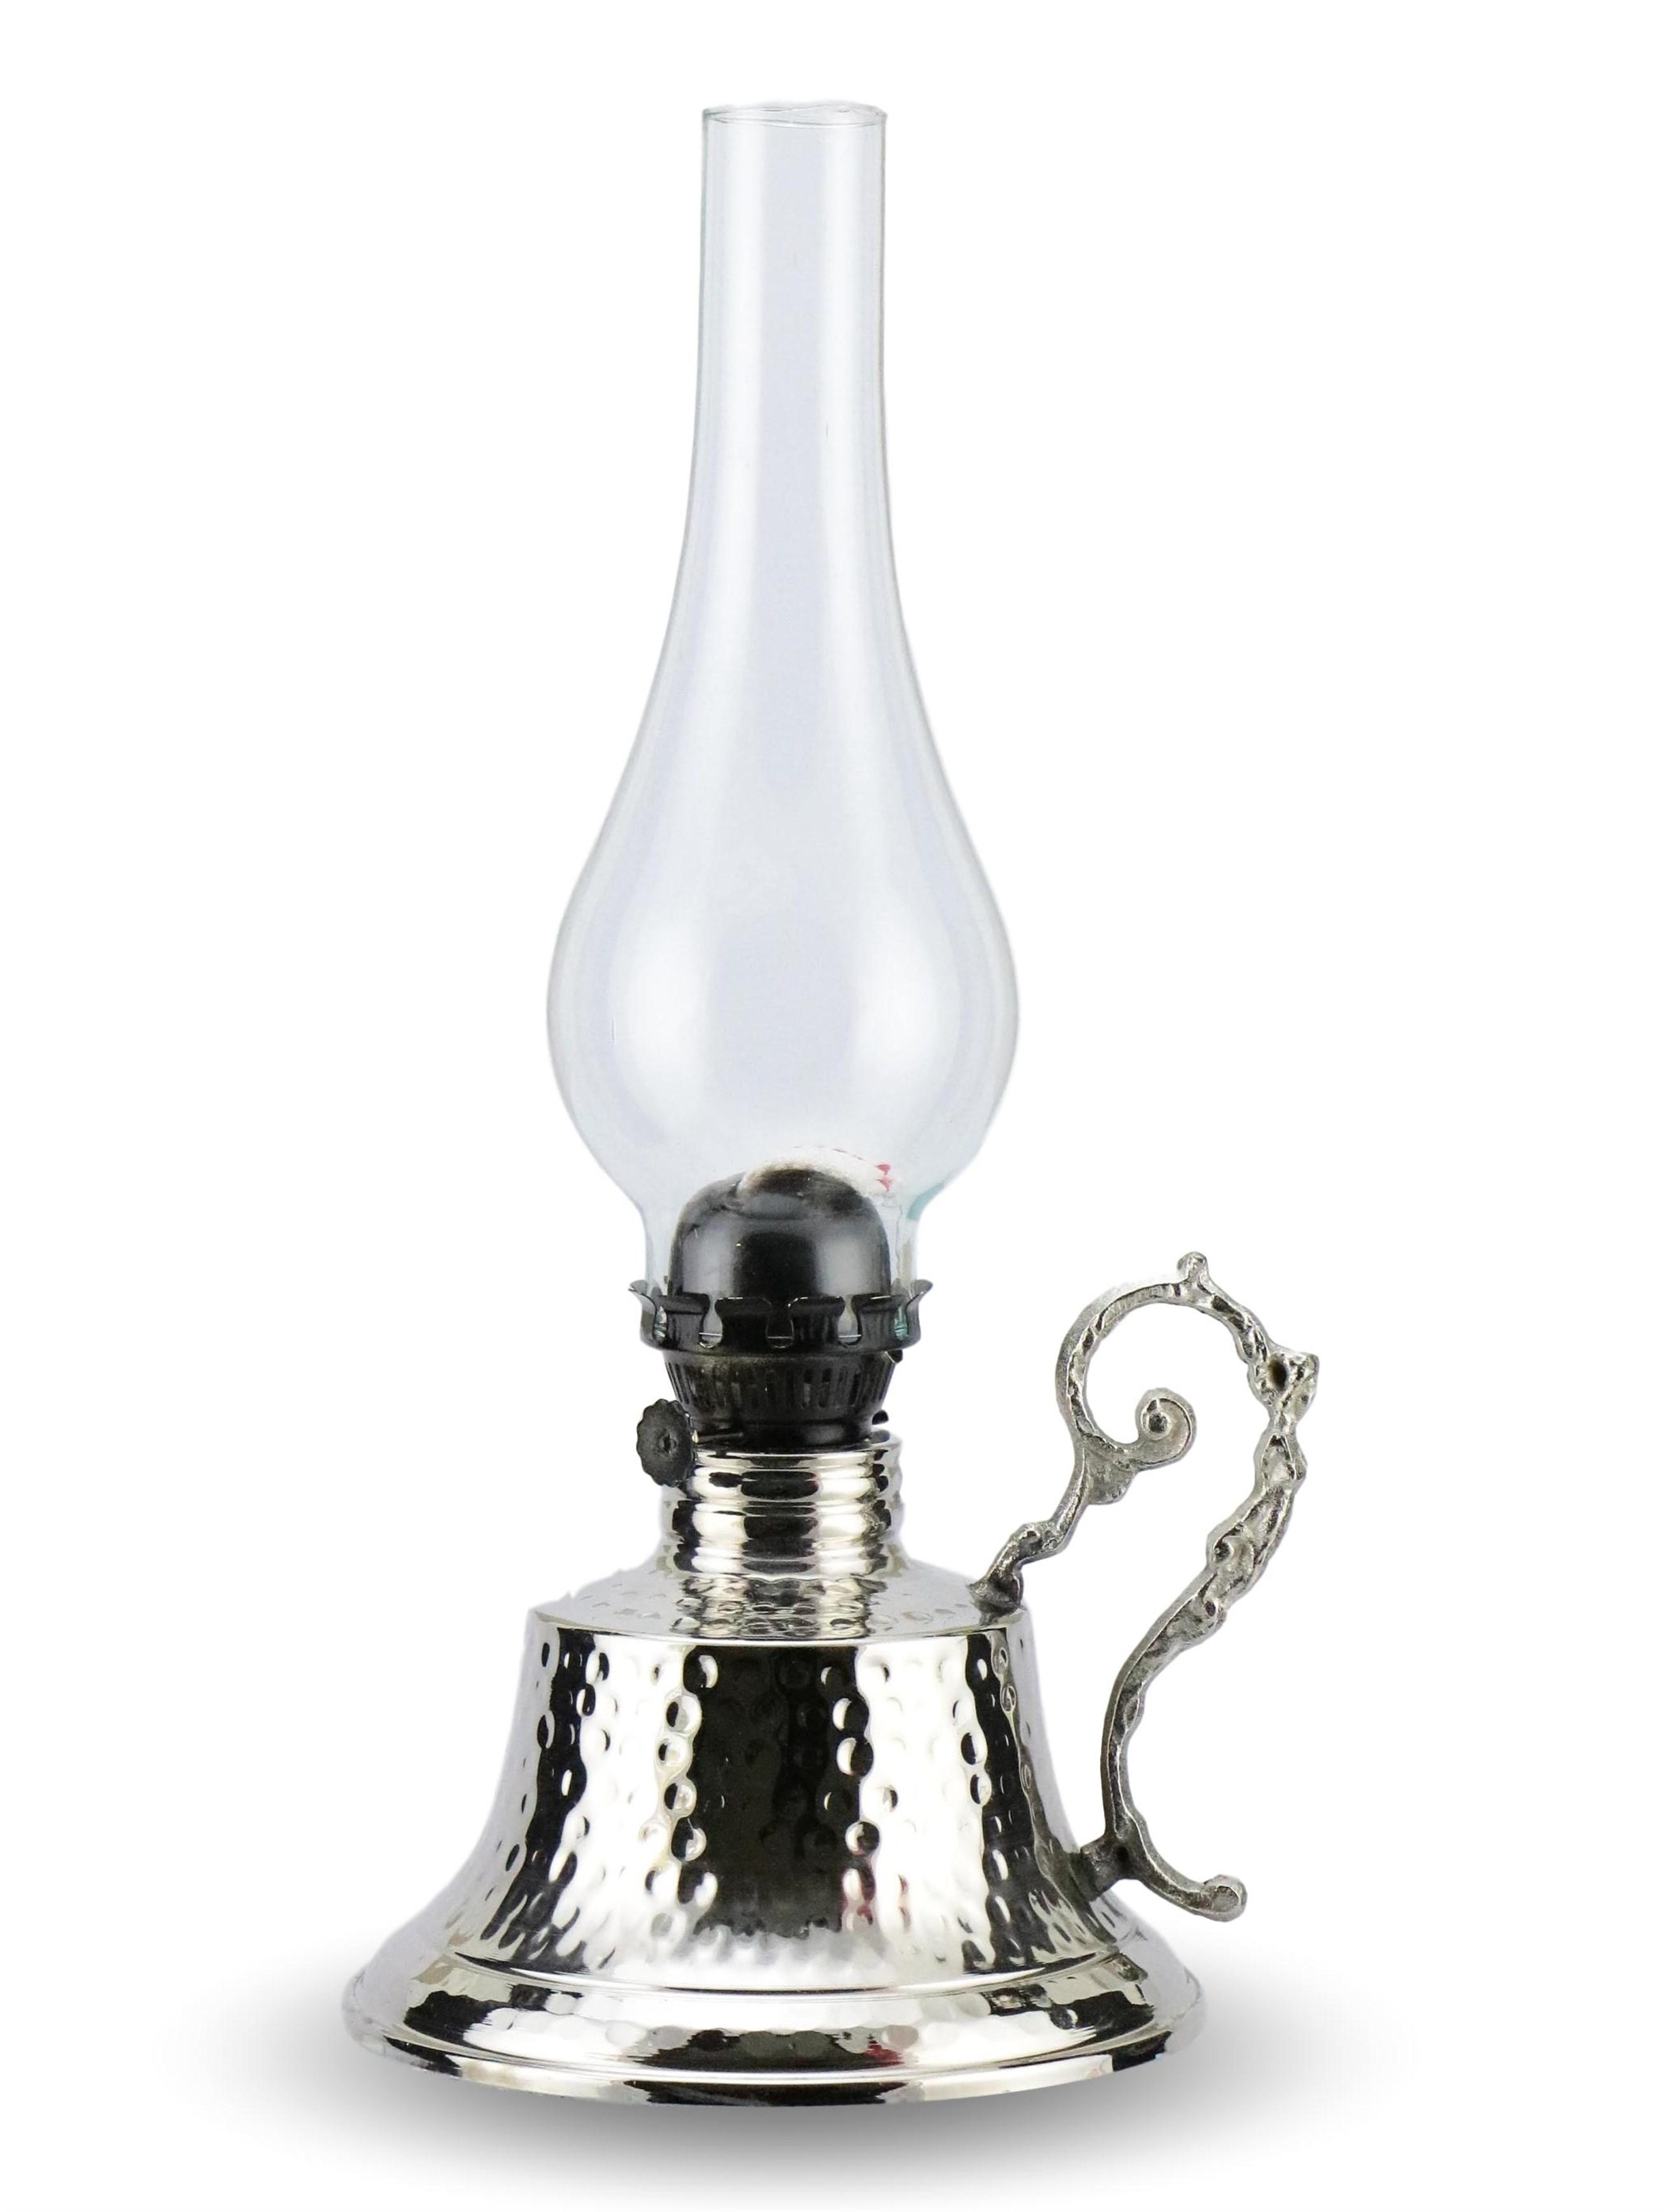 Изображение товара: Декоративная никелированная газовая лампа ручной работы SONAYCOPPER, лампа для дачи, фонарь, масляная лампа, светильник лампа, медная газовая лампа